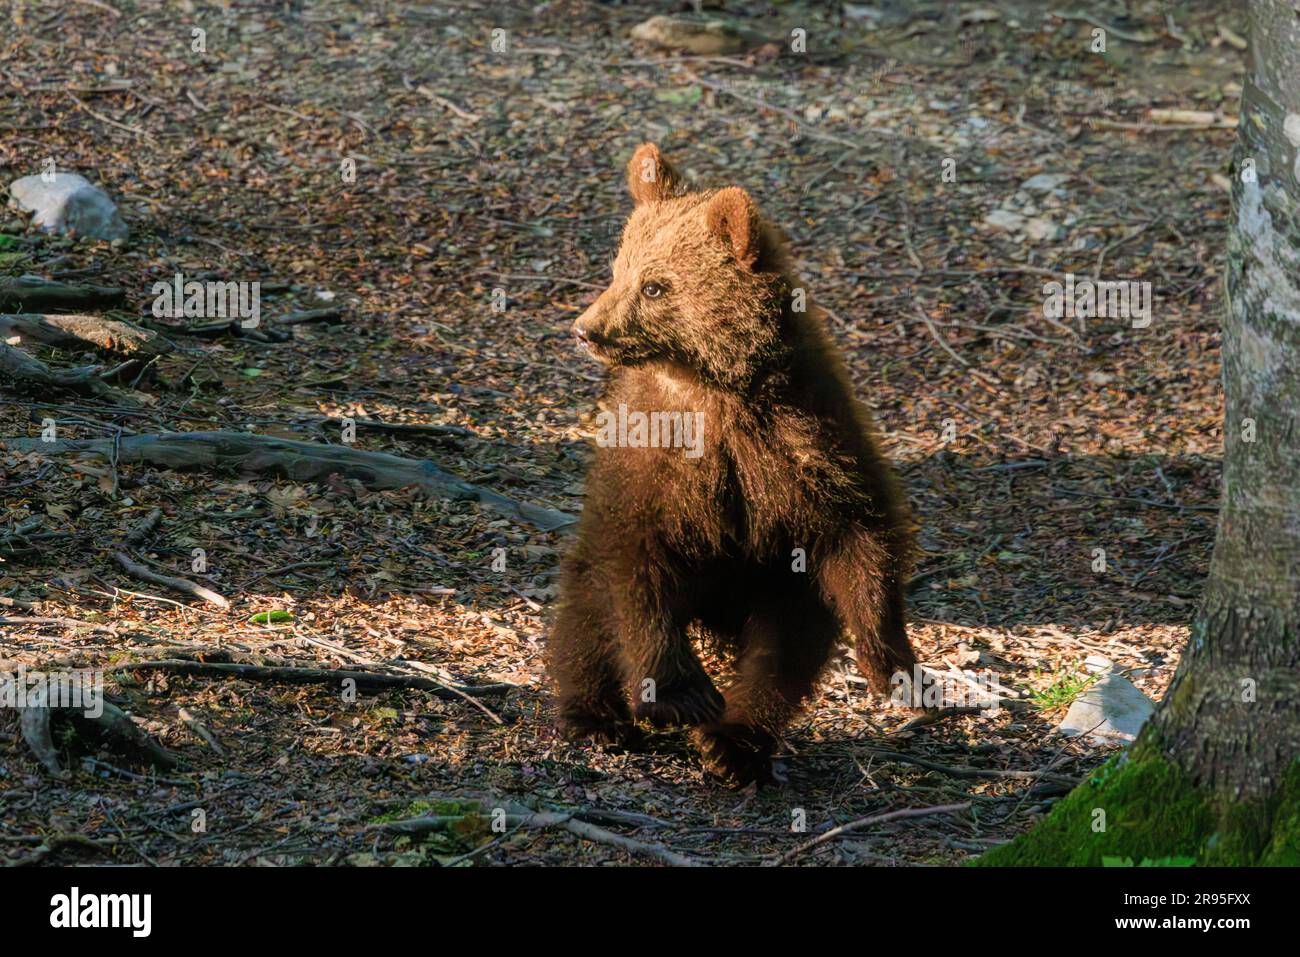 grazioso cucciolo di orso che cammina in una radura forestale al crepuscolo in un tour di osservazione degli orsi in slovenia Foto Stock